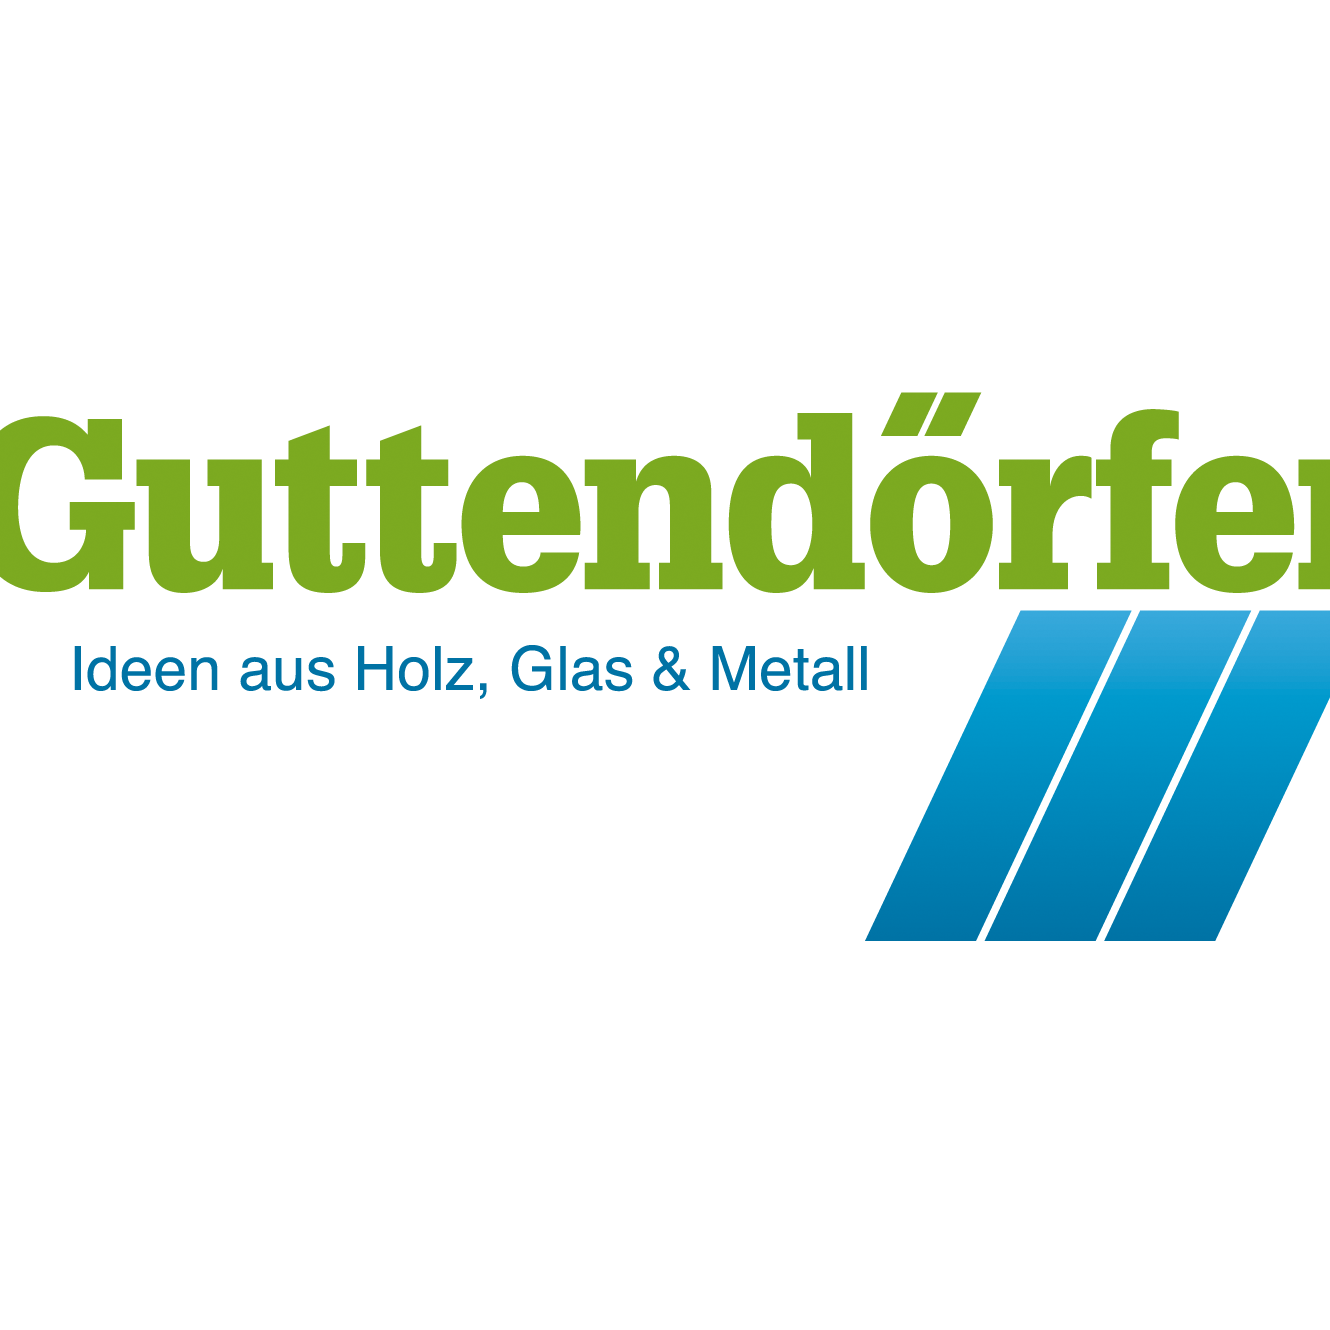 Guttendörfer GmbH & Co. KG